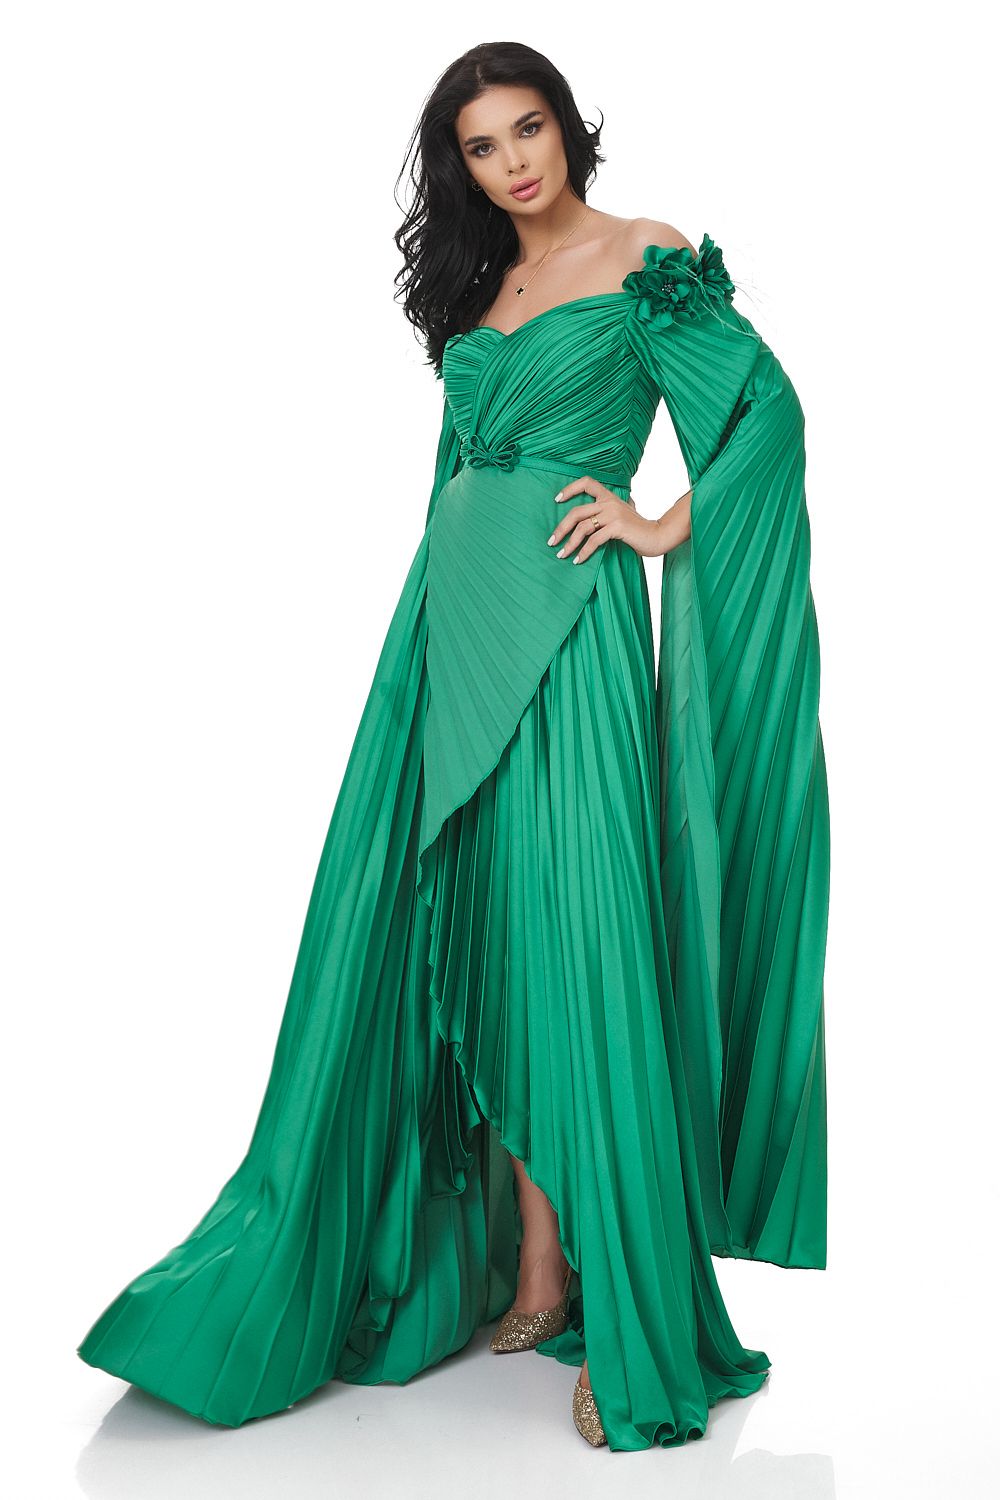 Long green dress for women Miesje Bogas